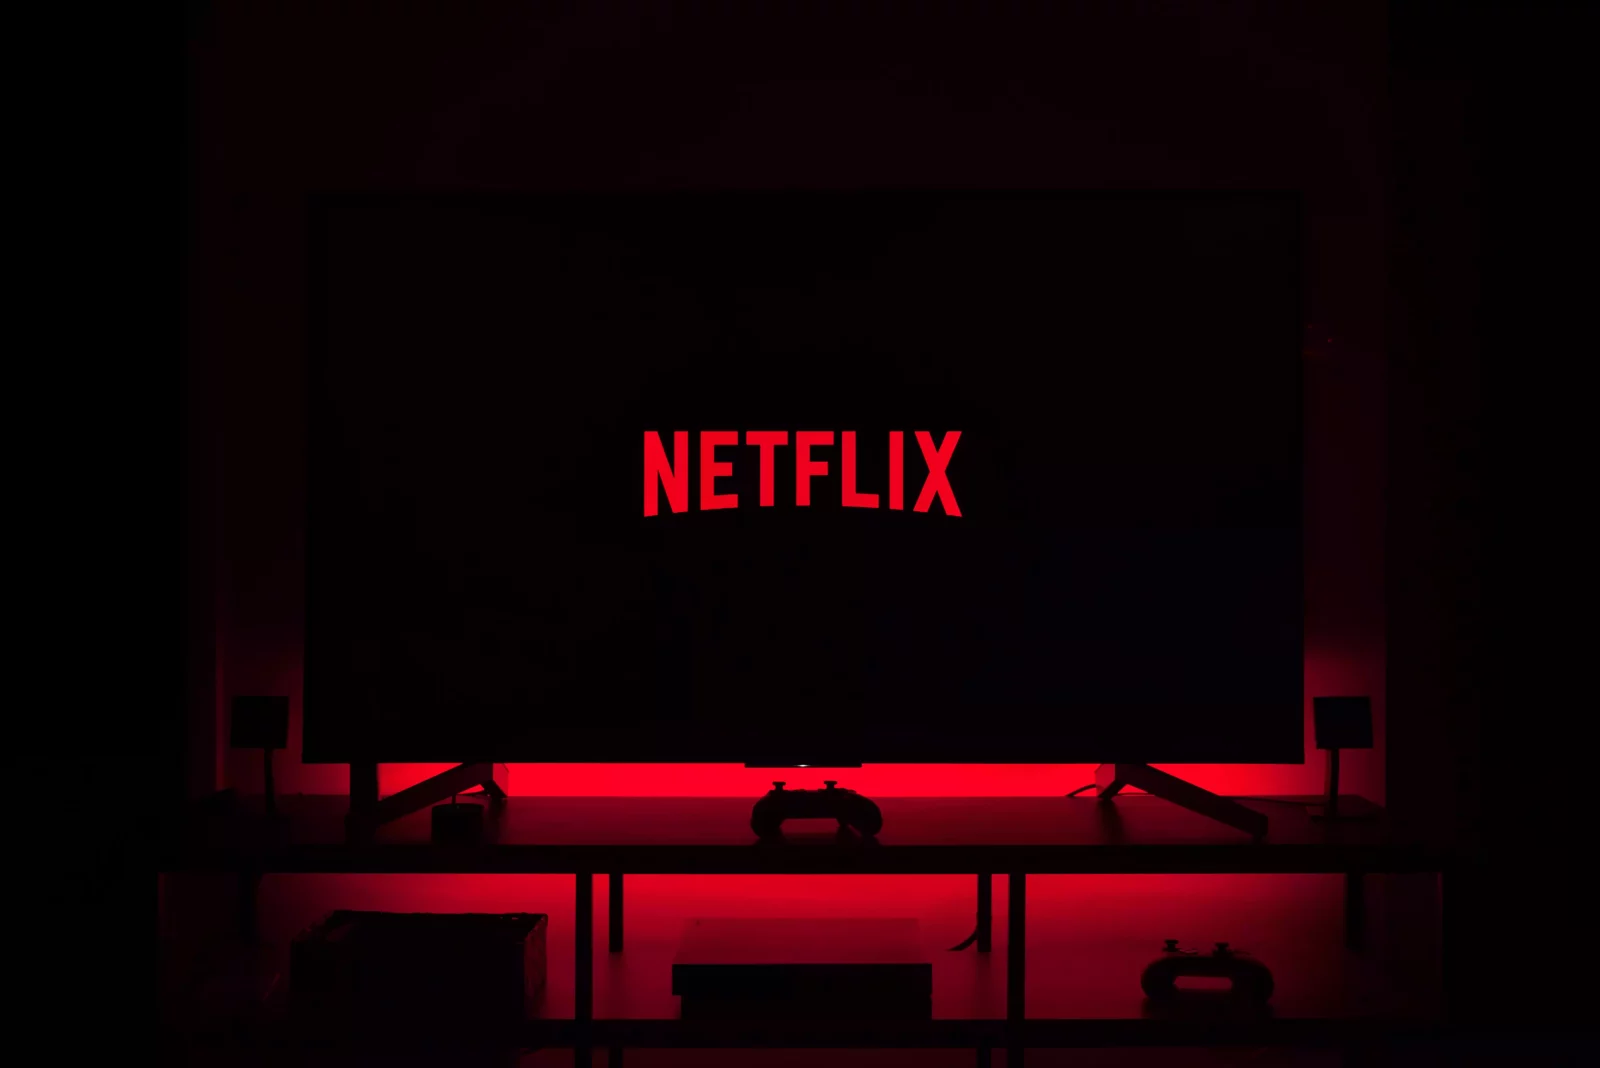 Netflix logo on TV set